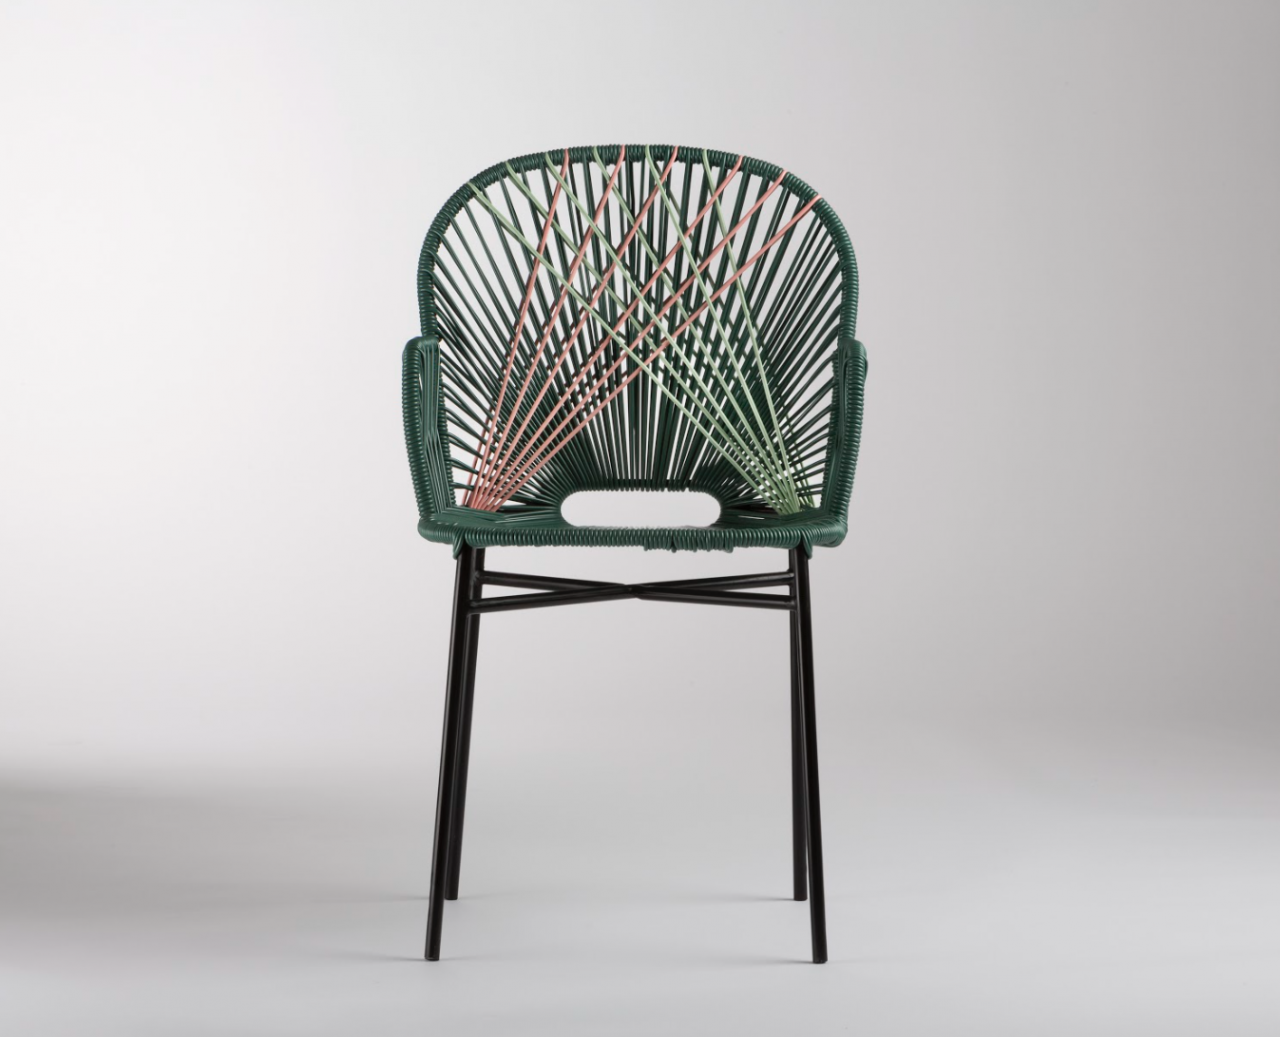 Chaise - chaise de bureau - chaise de jardin. Fabrication française.